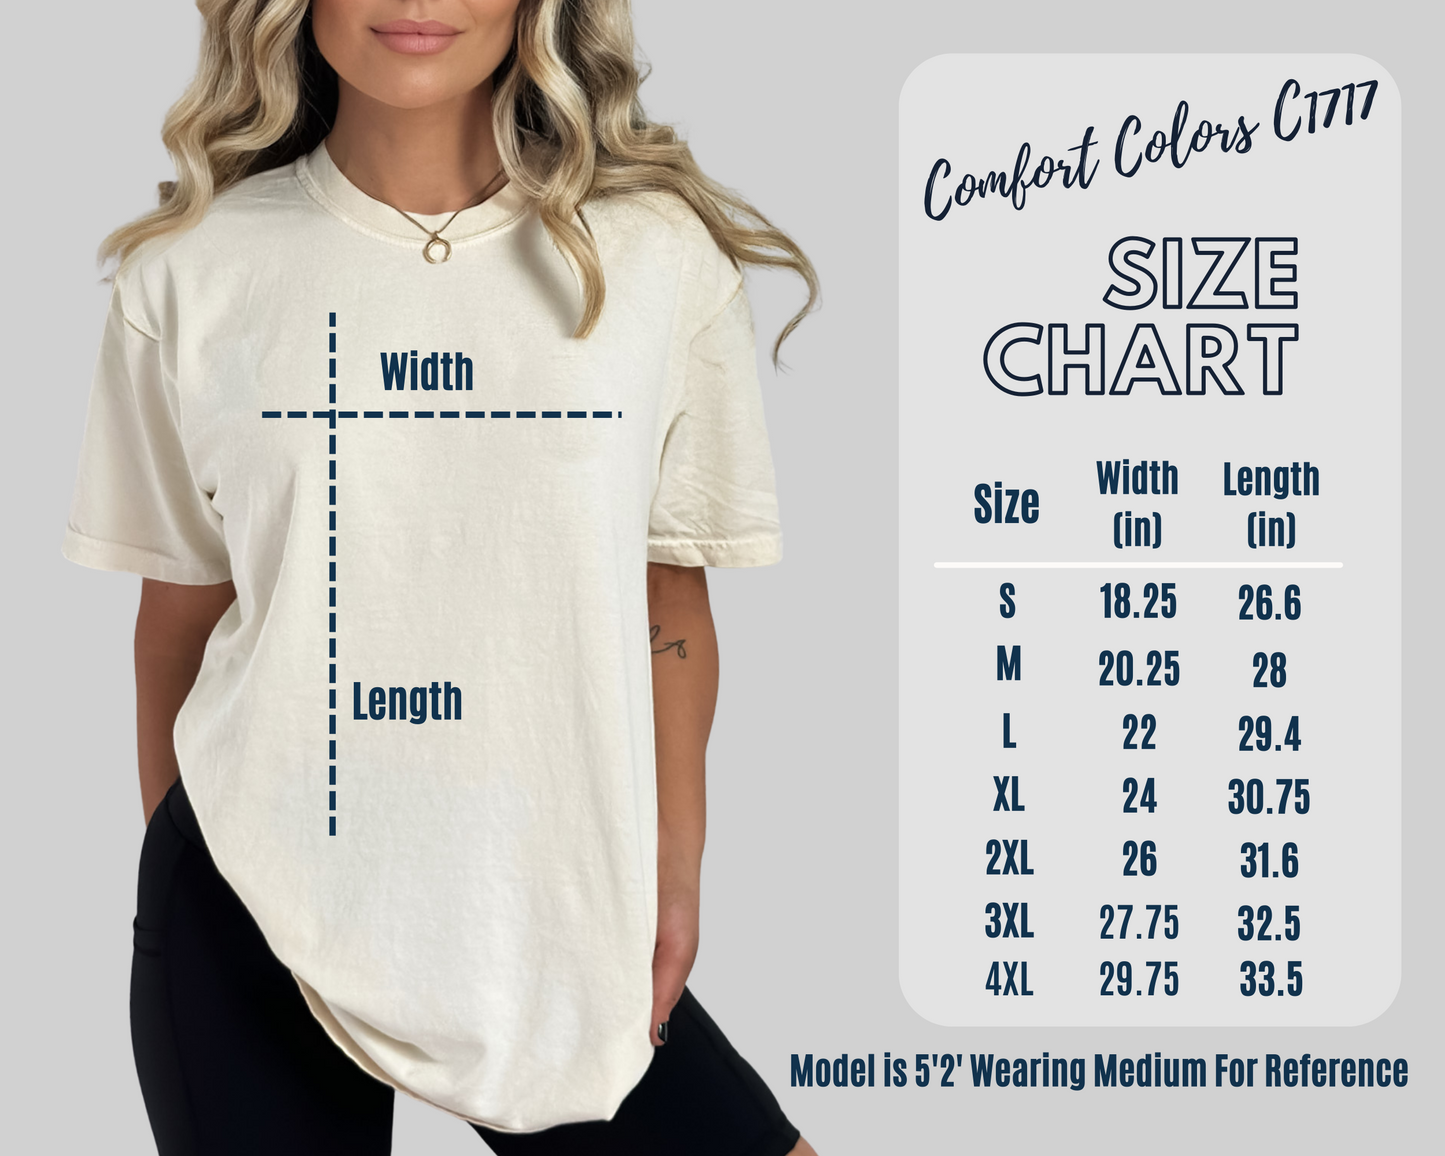 Comfort colors unisex t-shirt 1717 size chart